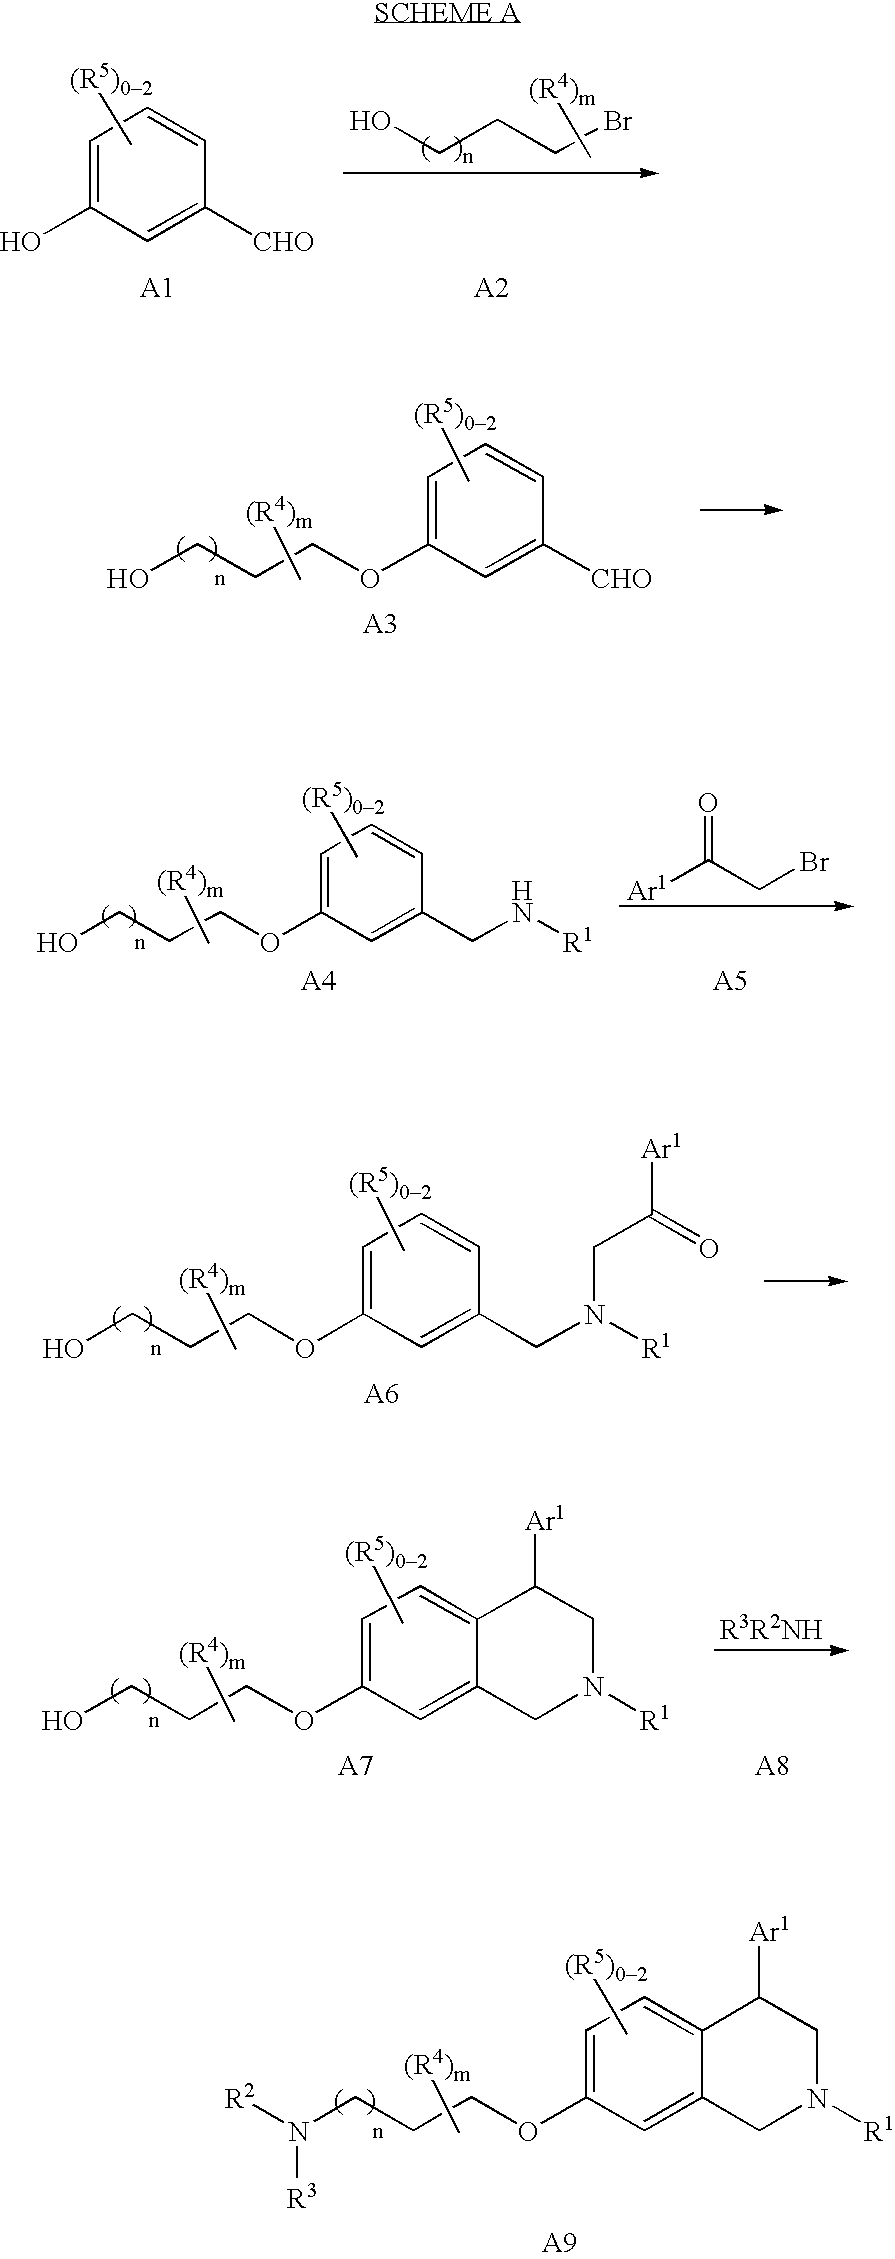 Tetrahydroisoquinoline compounds